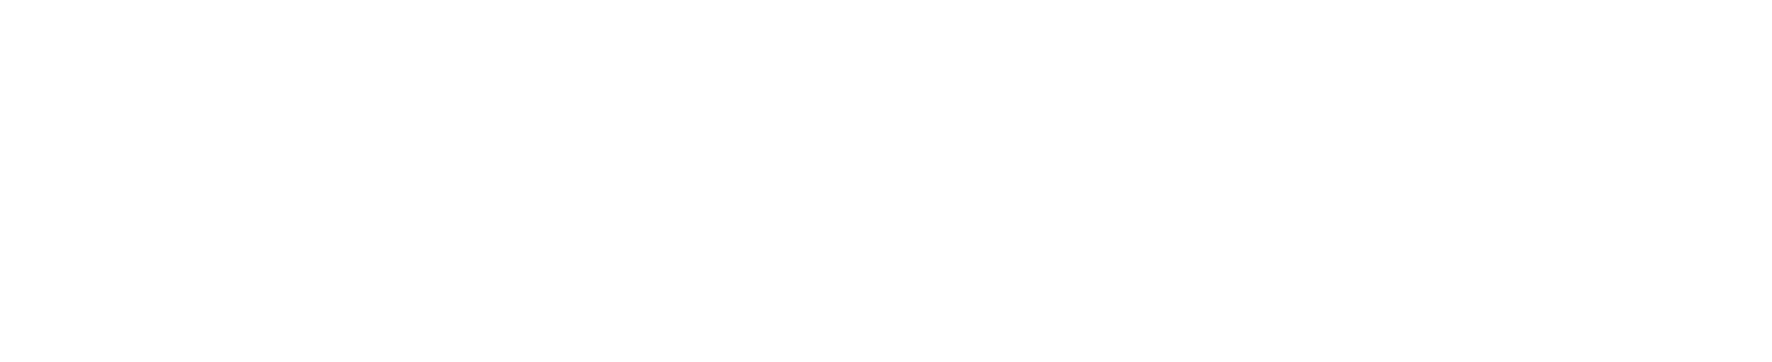 Union logo white